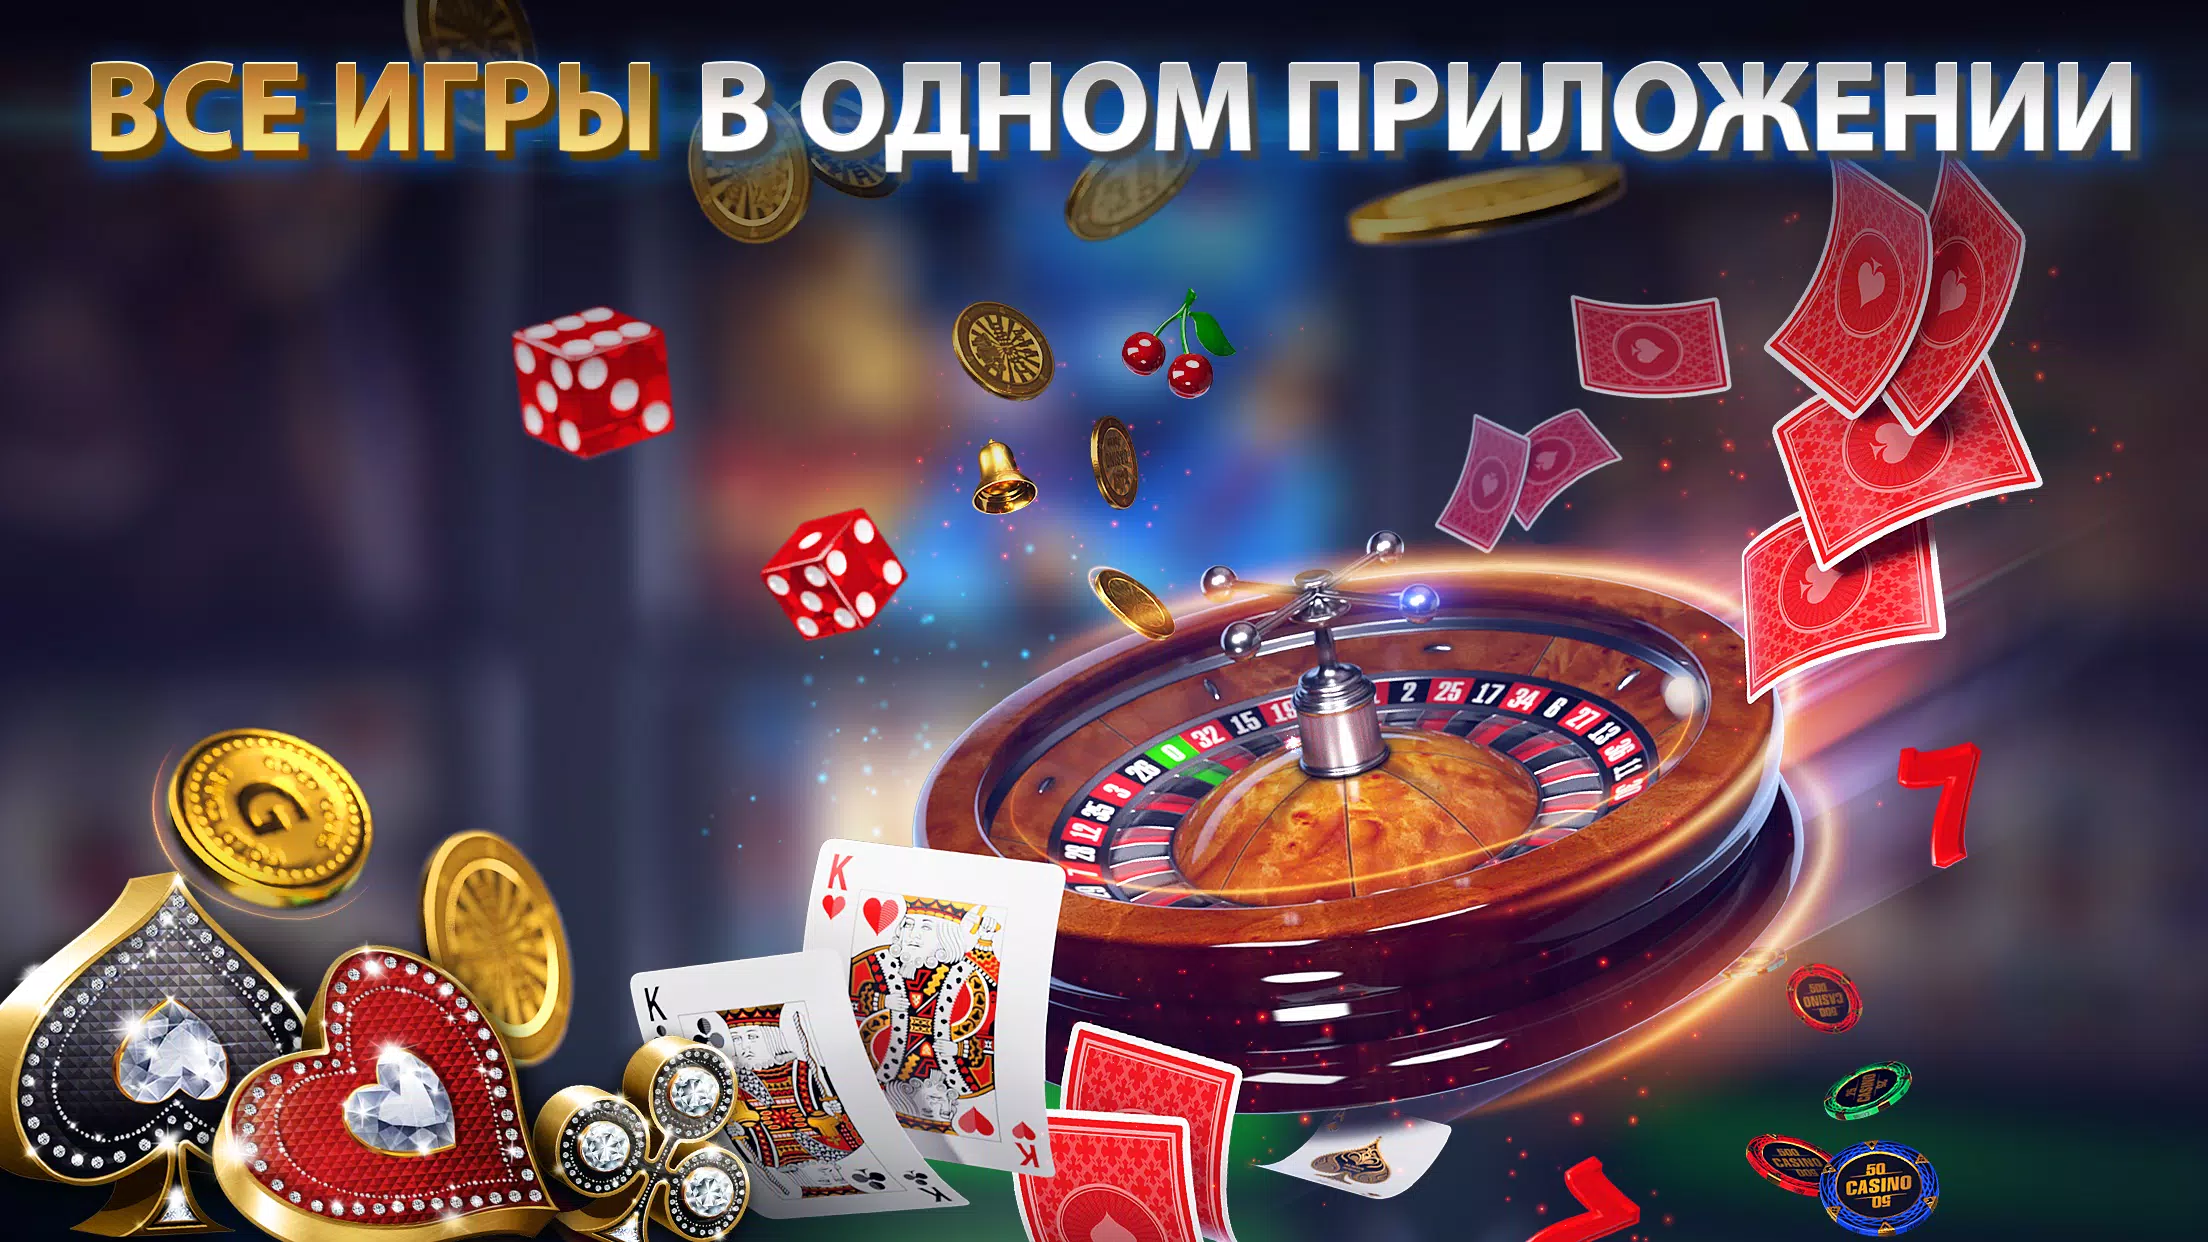 Покер омаха онлайн бесплатно без регистрации программа для игры в онлайн рулетку